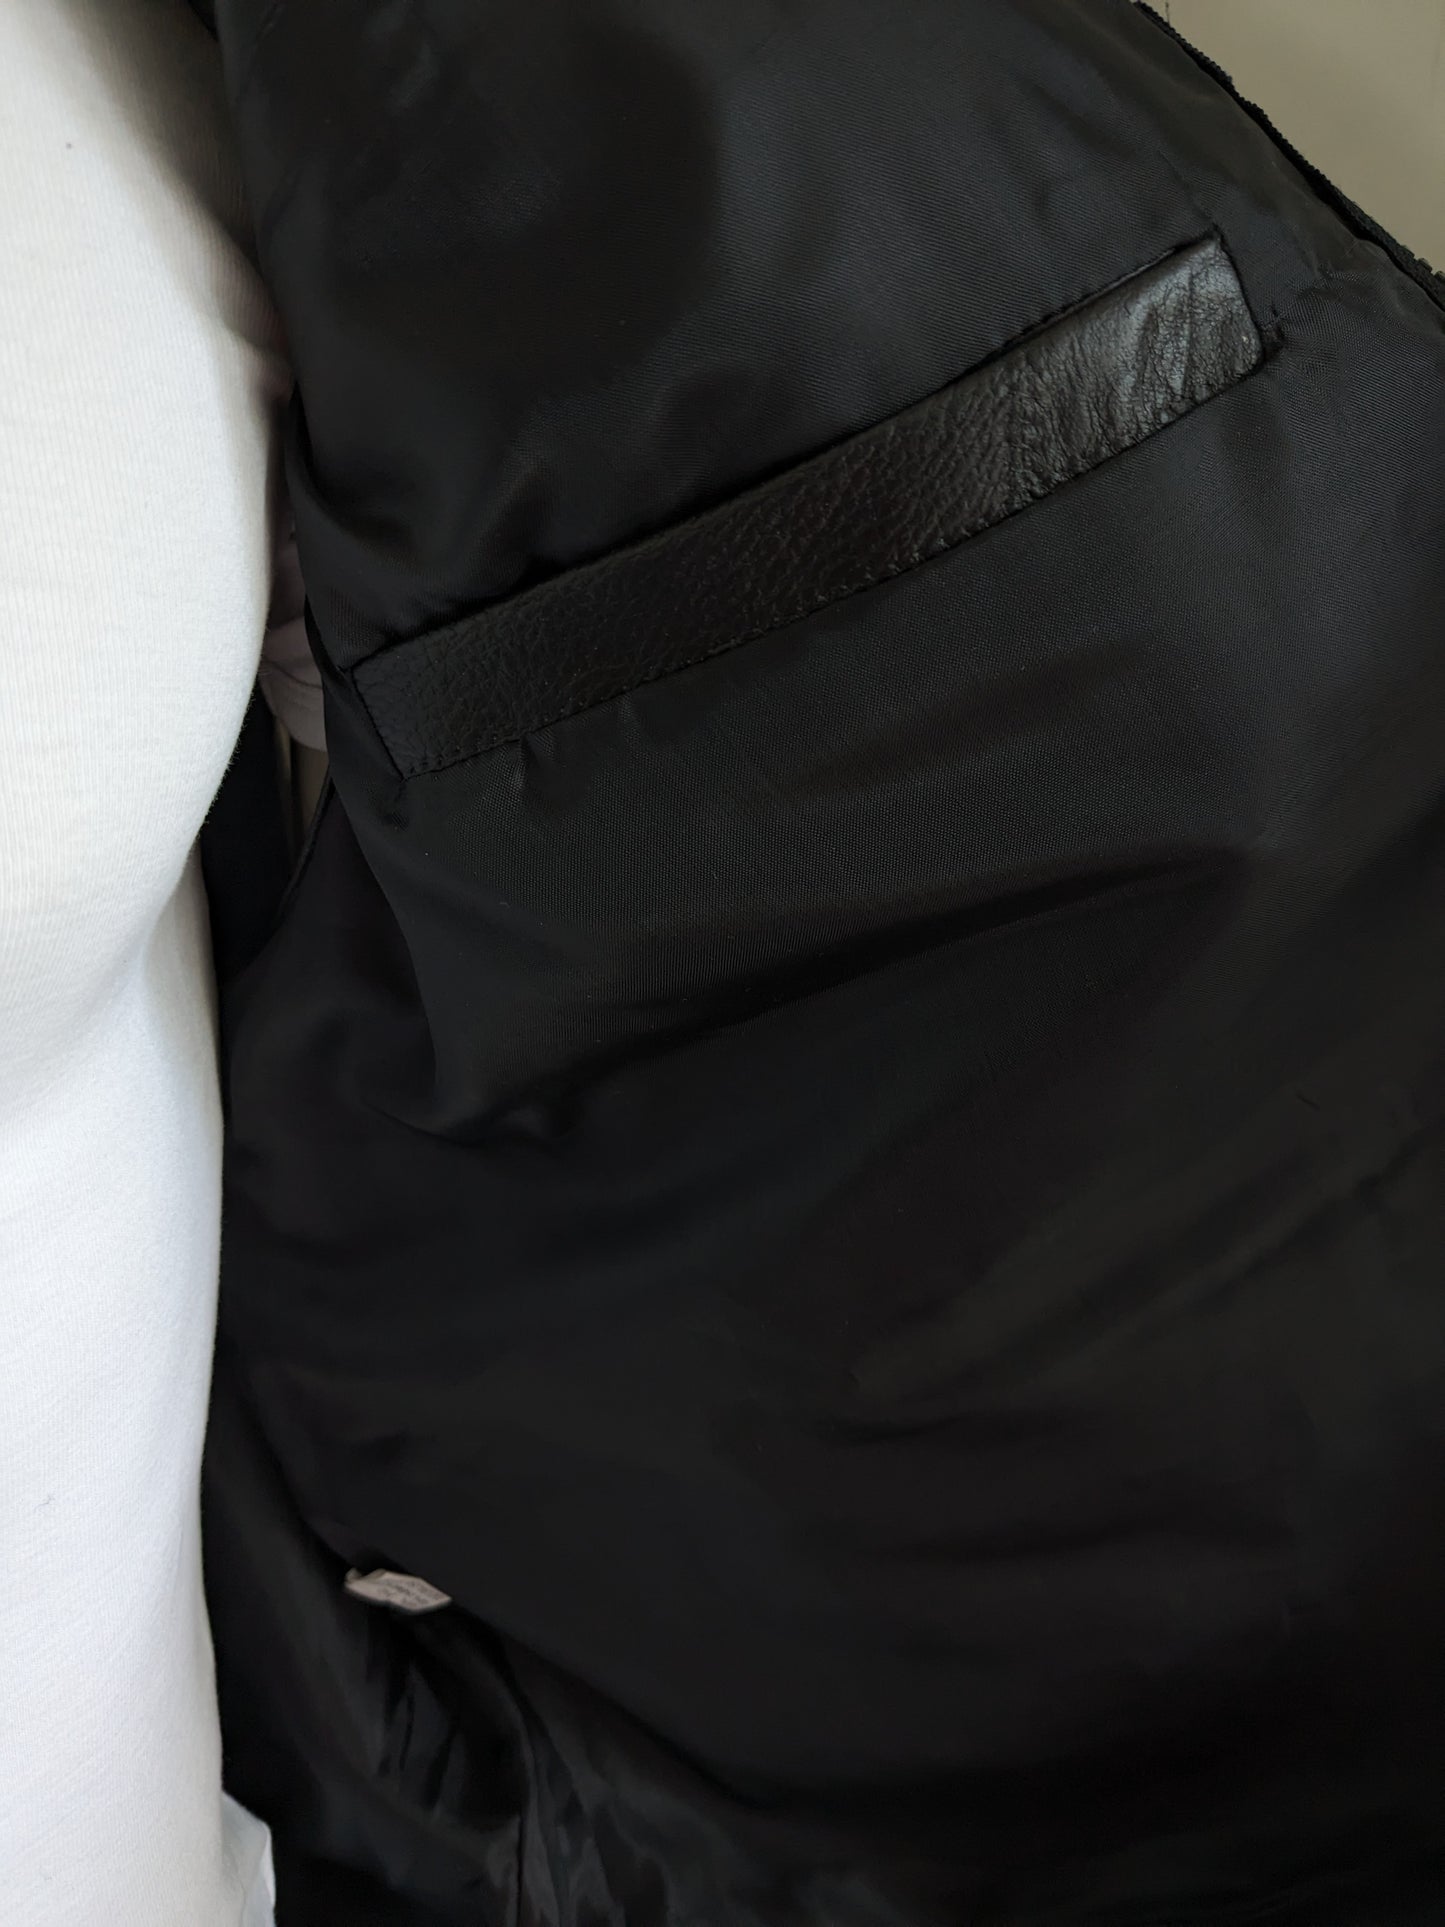 CS701 Cuerpo de cuero con muchas bolsas. Parches negros. Tamaño xl. Con 1 bolsillo interior.